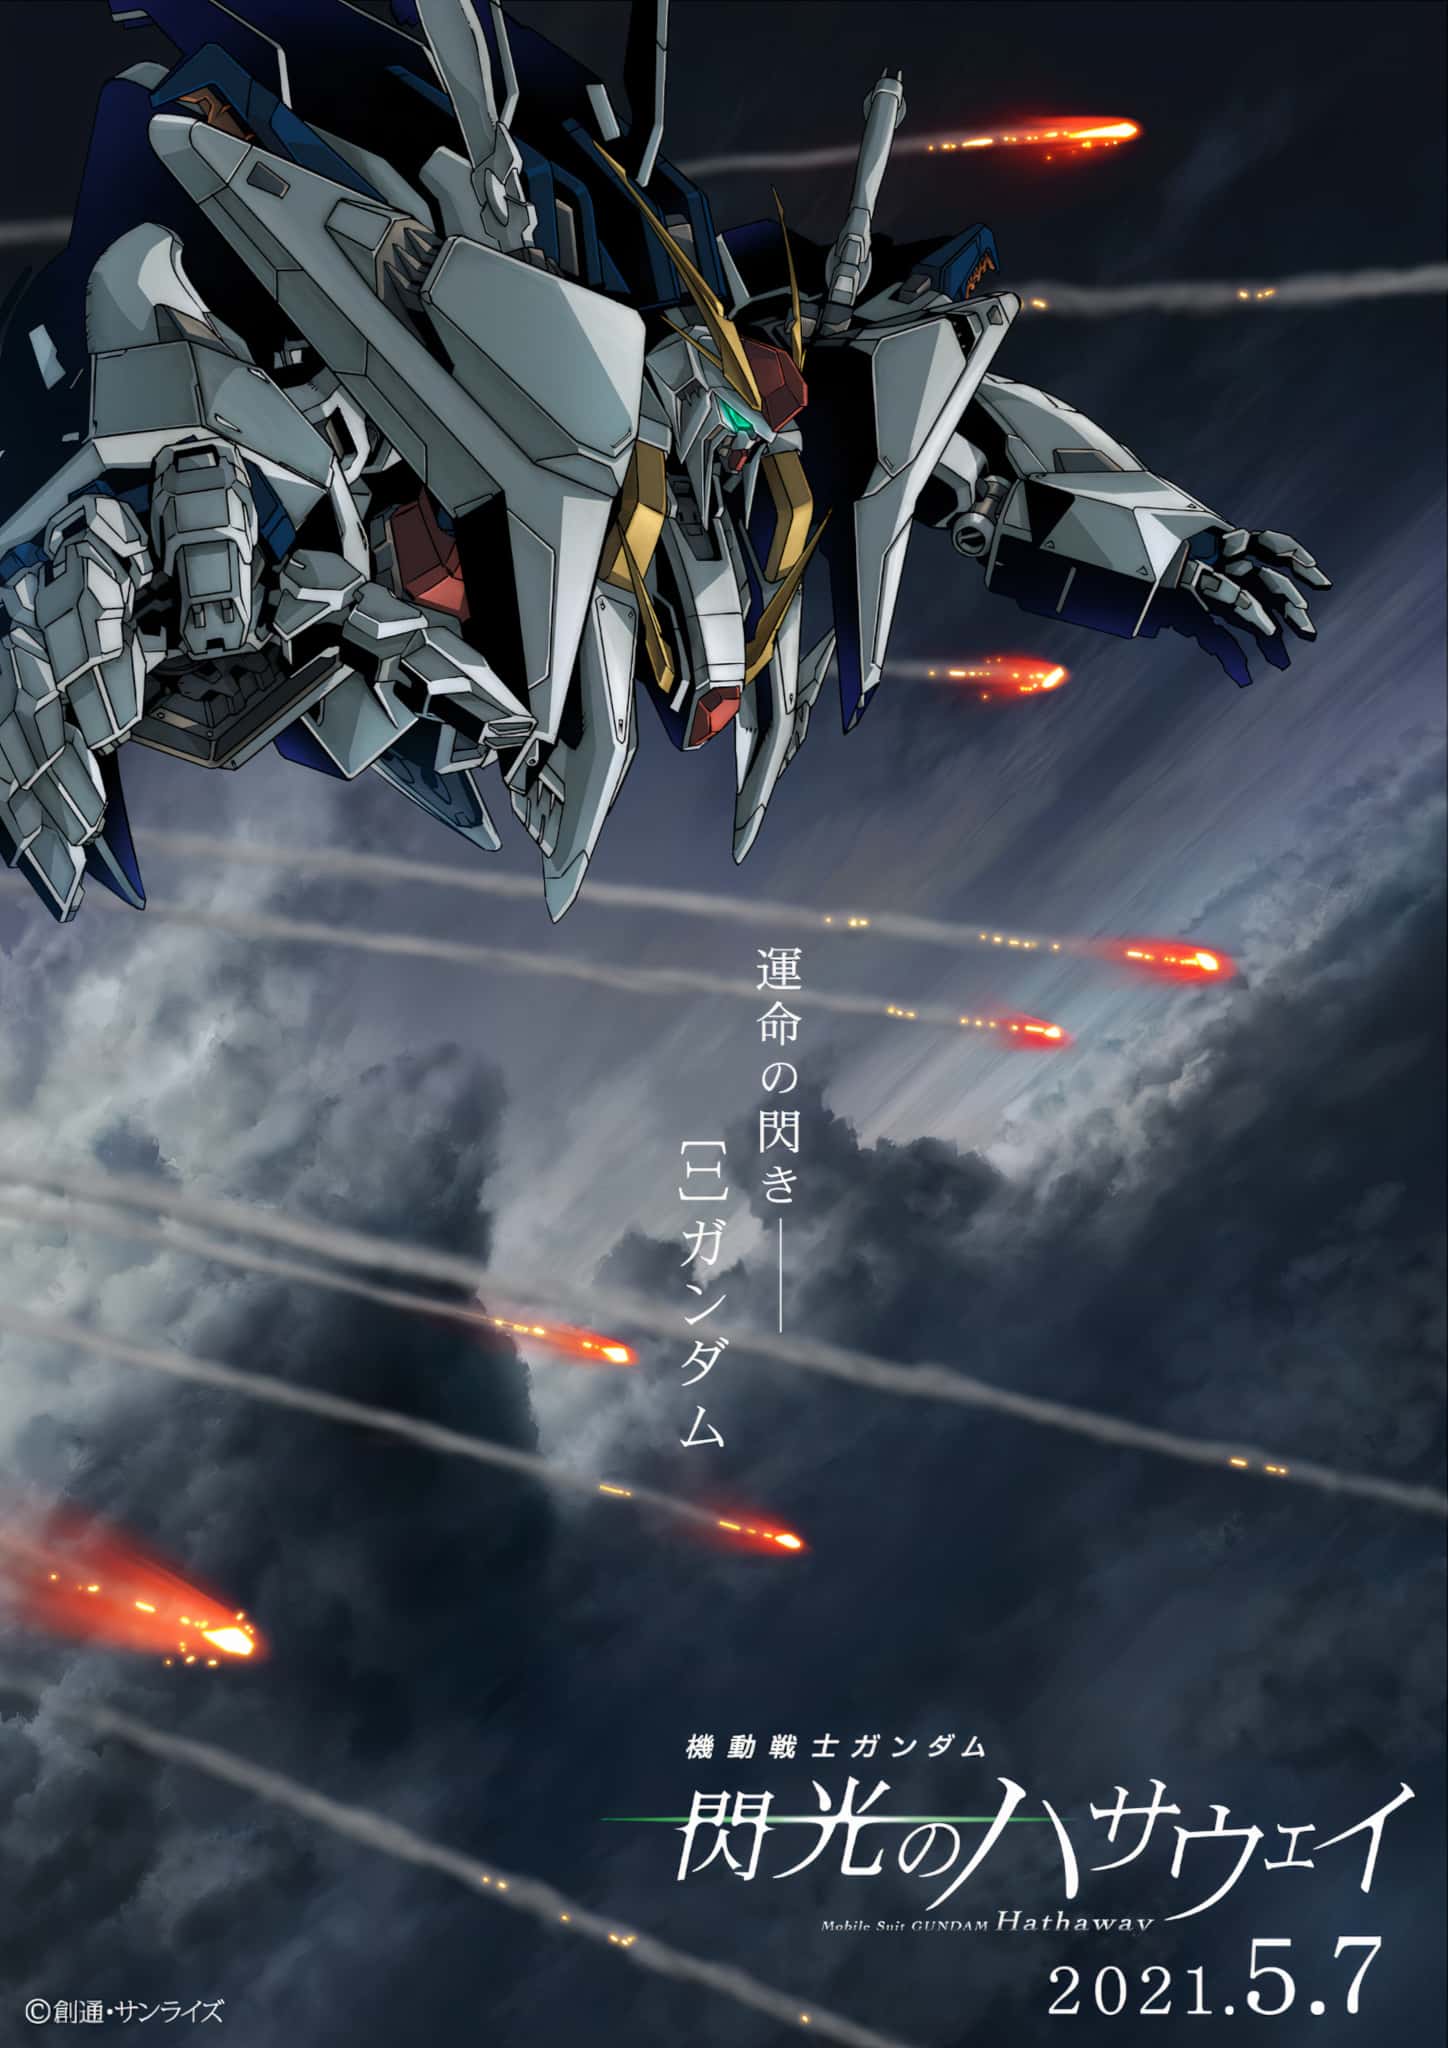 Annonce du film Mobile Suit Gundam Hathaway en date de sortie